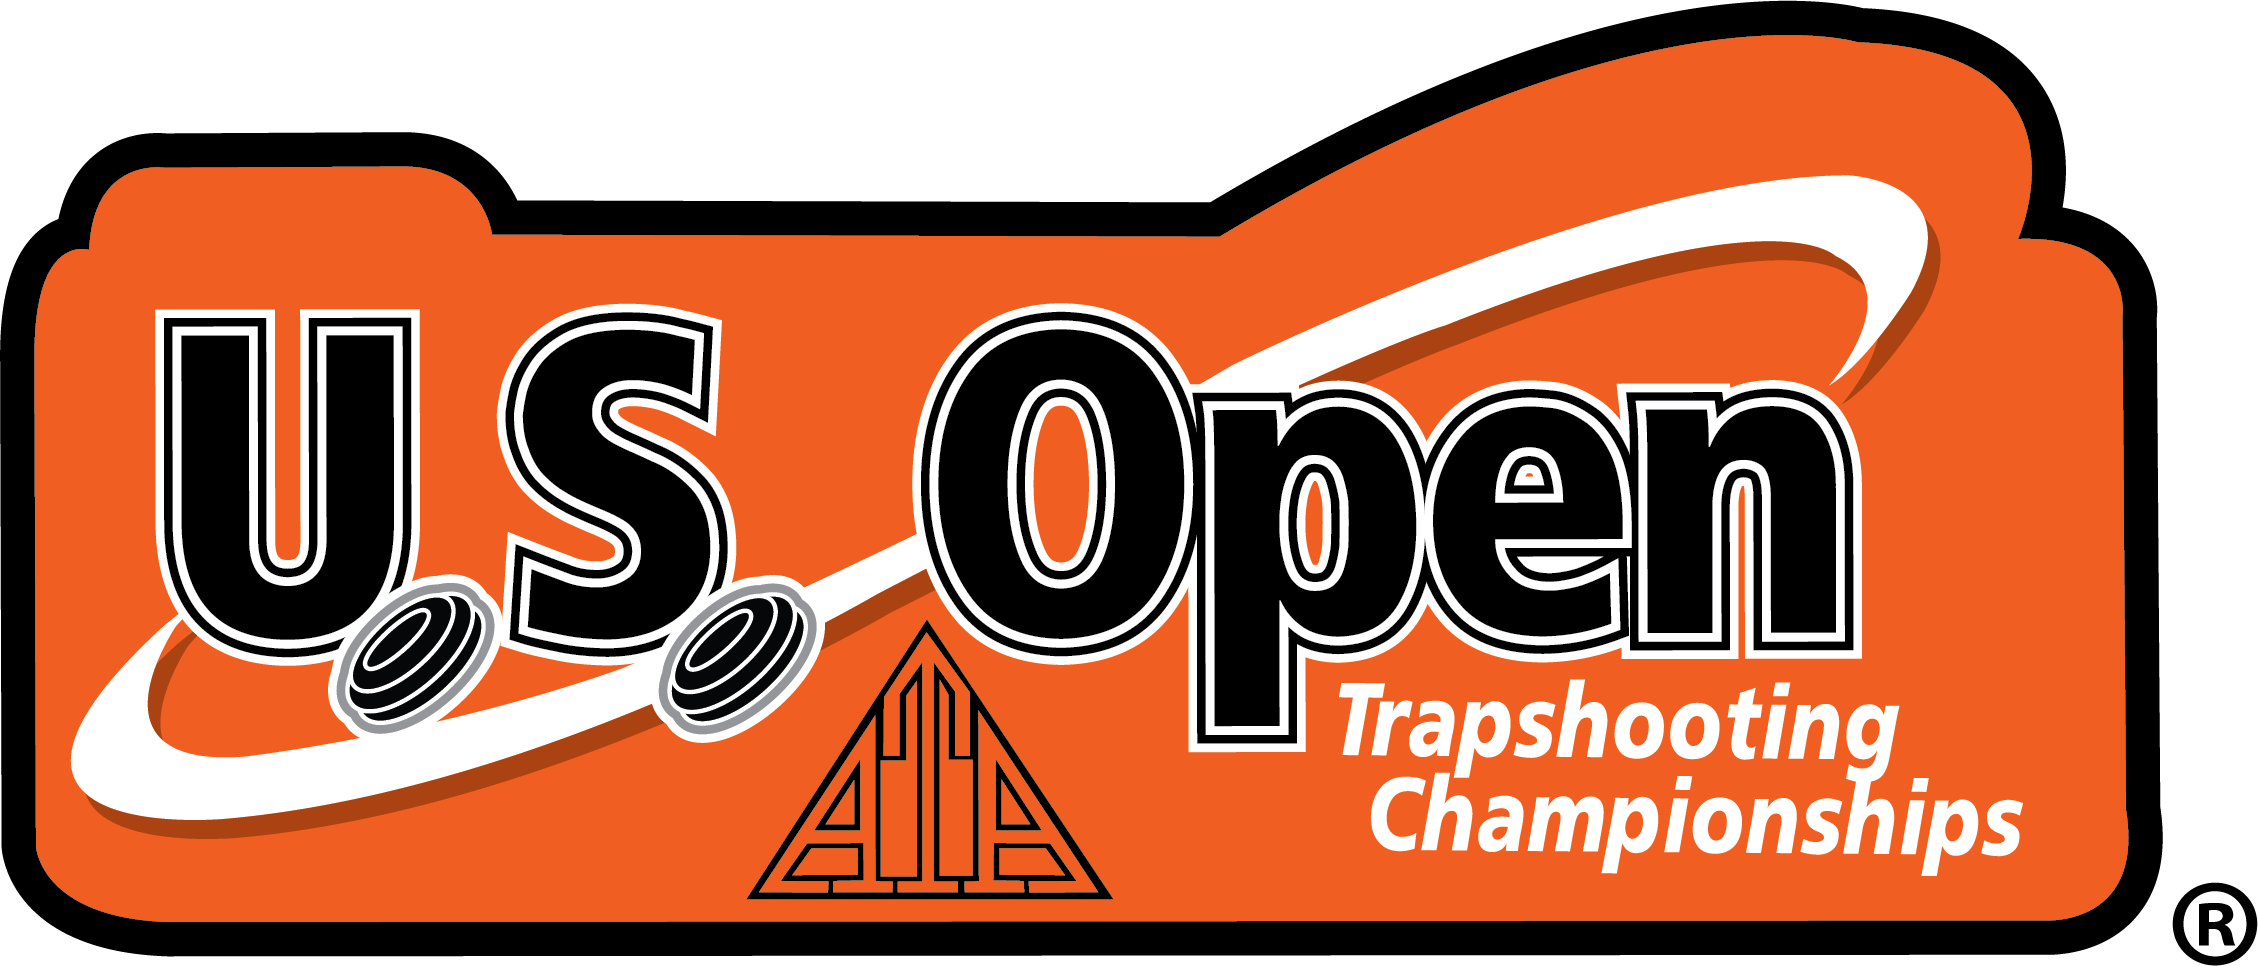 Amateur Trapshooting Association > About Us > US Open